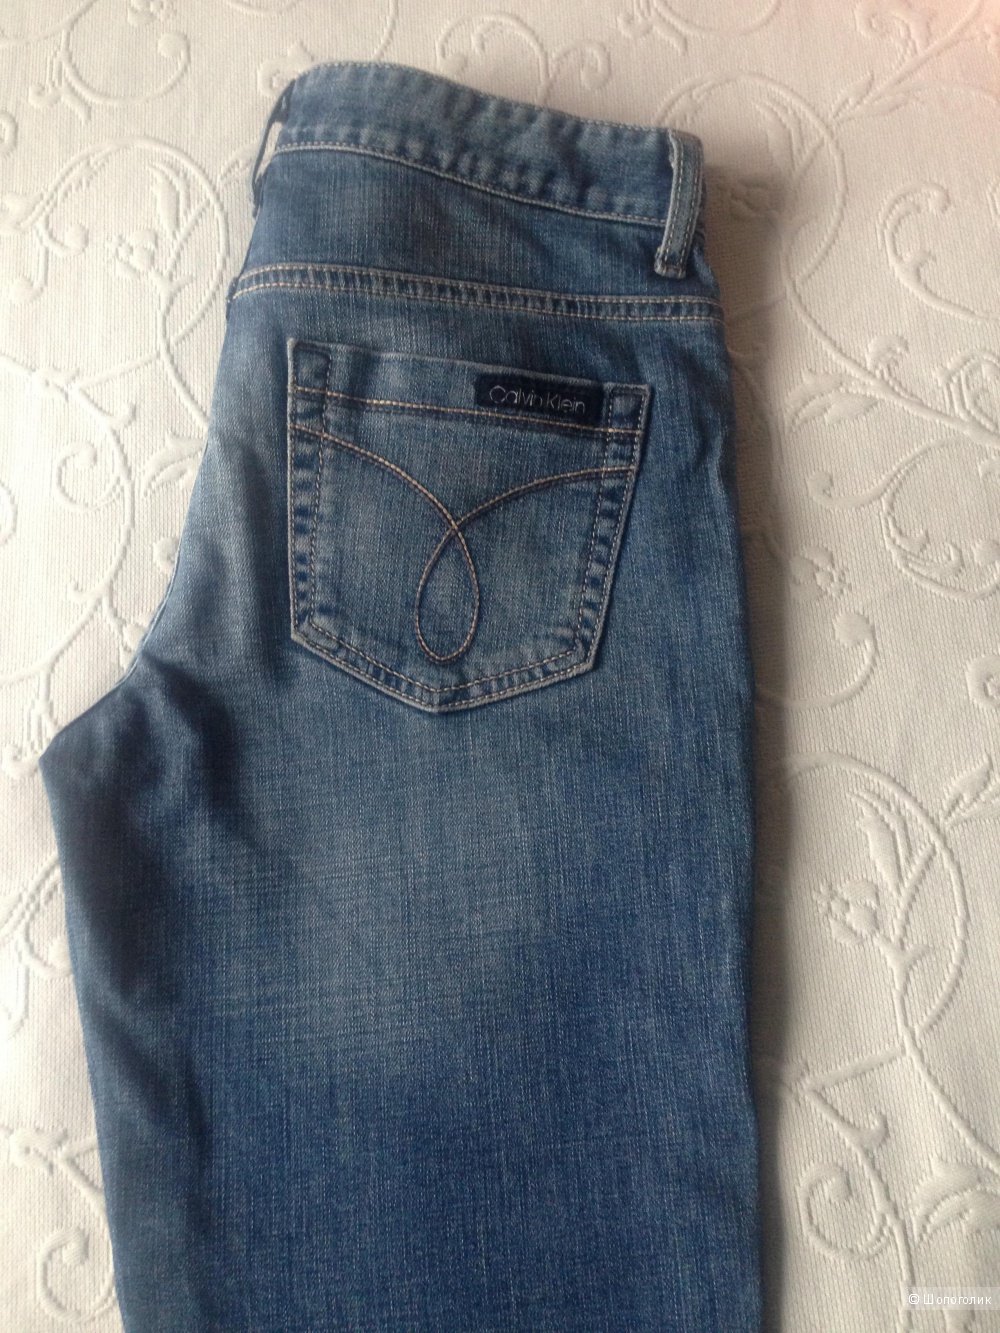 Дизайнерские джинсы  Calvin Klein Jeans 27размер оригинал  США